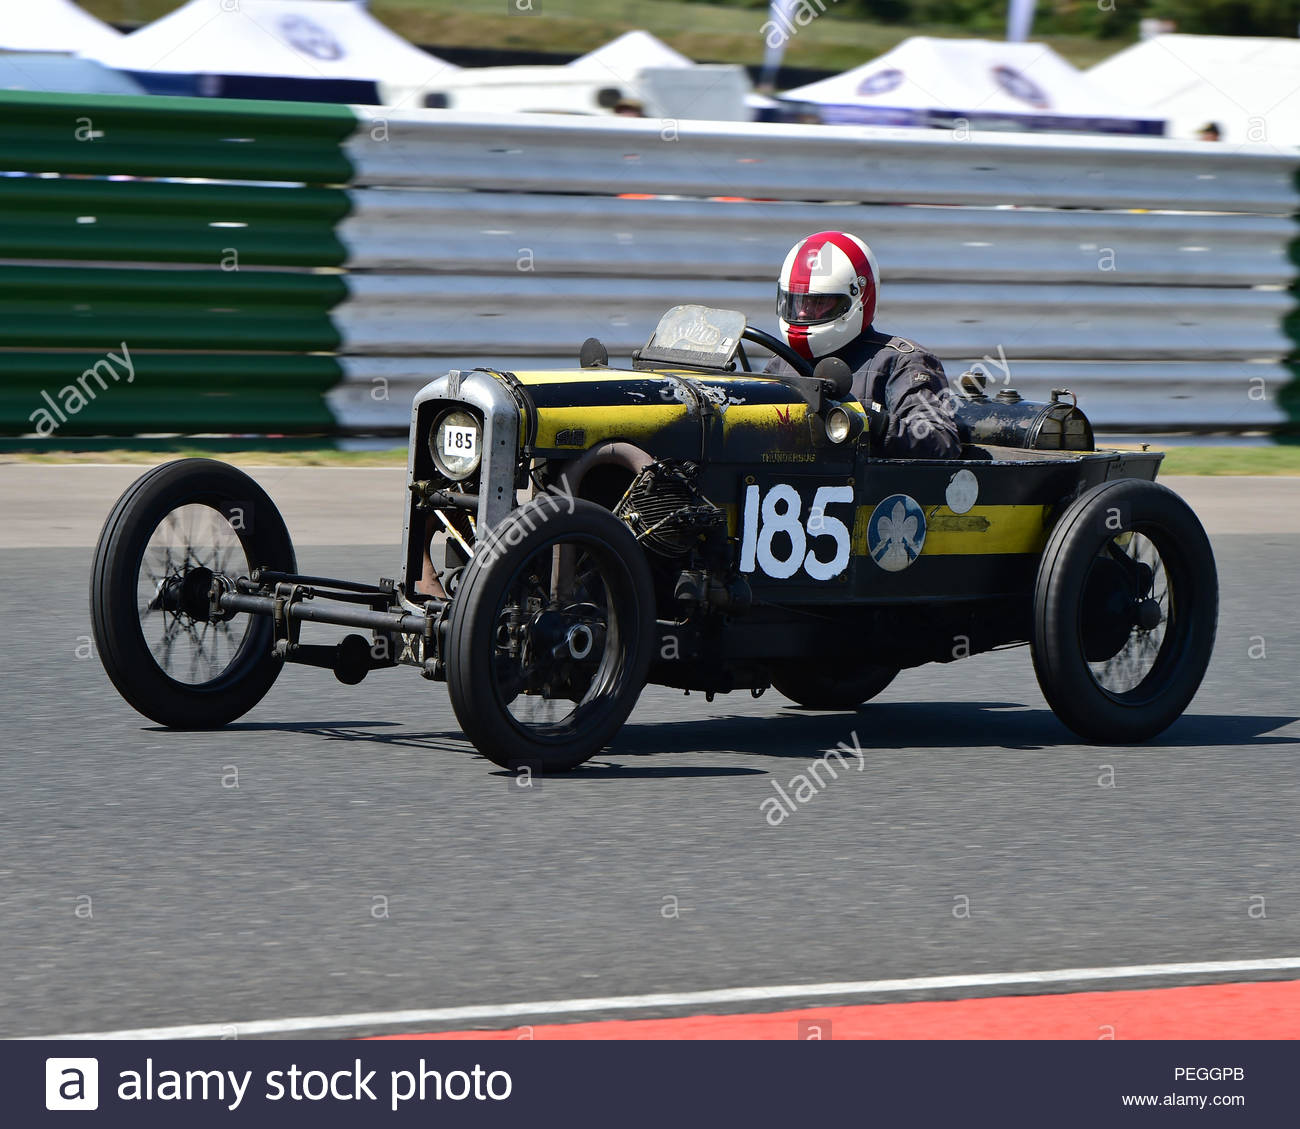 mark-walker-gn-thunderbug-vintage-racing-cars-vscc-.jpg